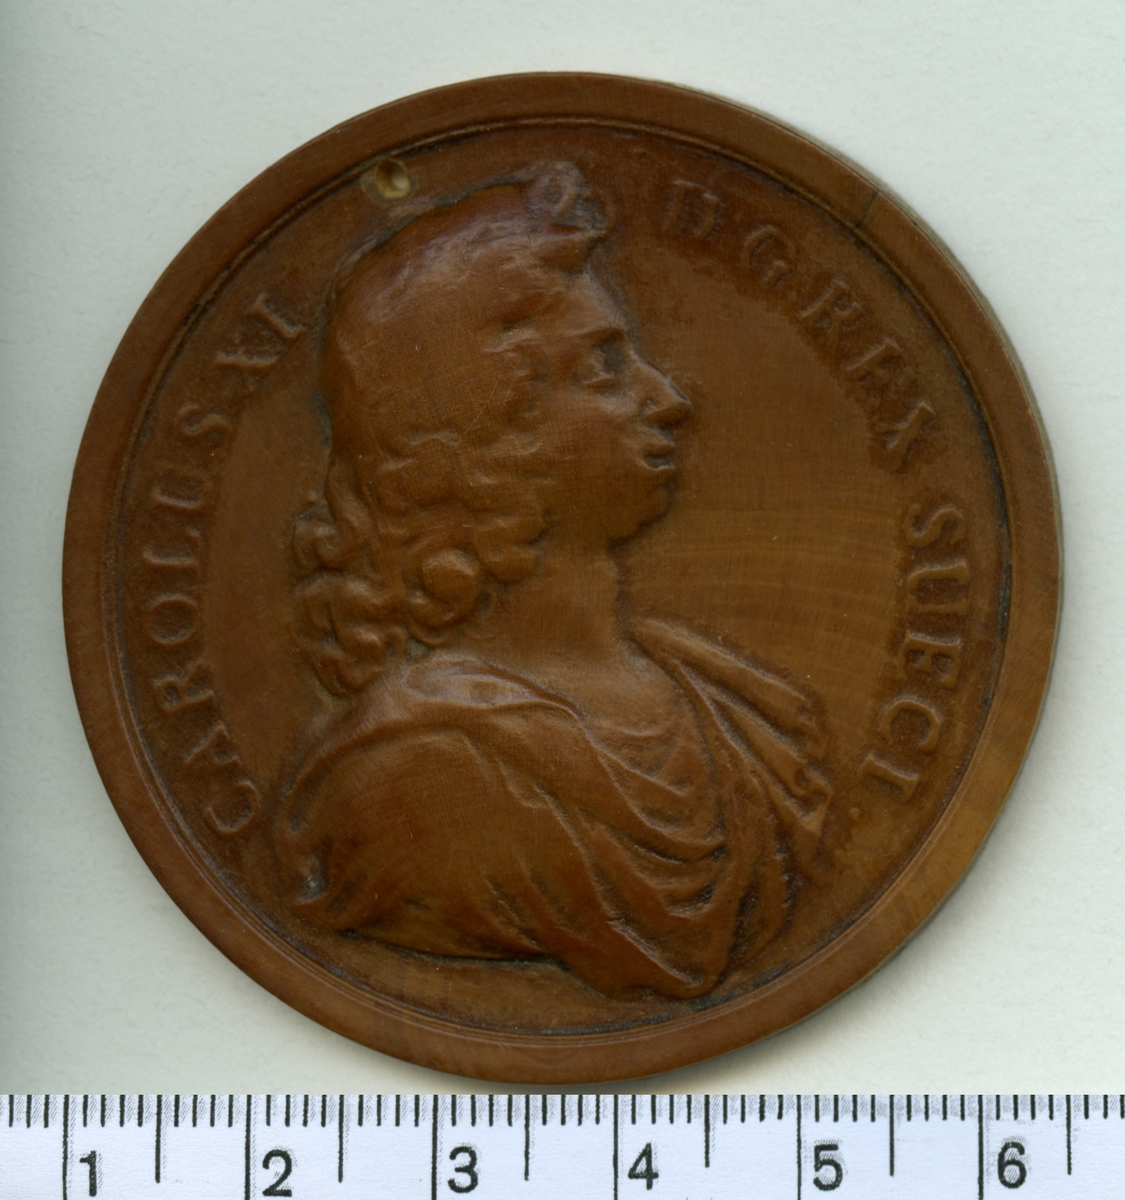 Modell till minnespeng i trä, visande Karl XI:s bröstbild.

Åtsida inskription: CAROLUS XI D G REX SUECI

Frånsida inskription: -